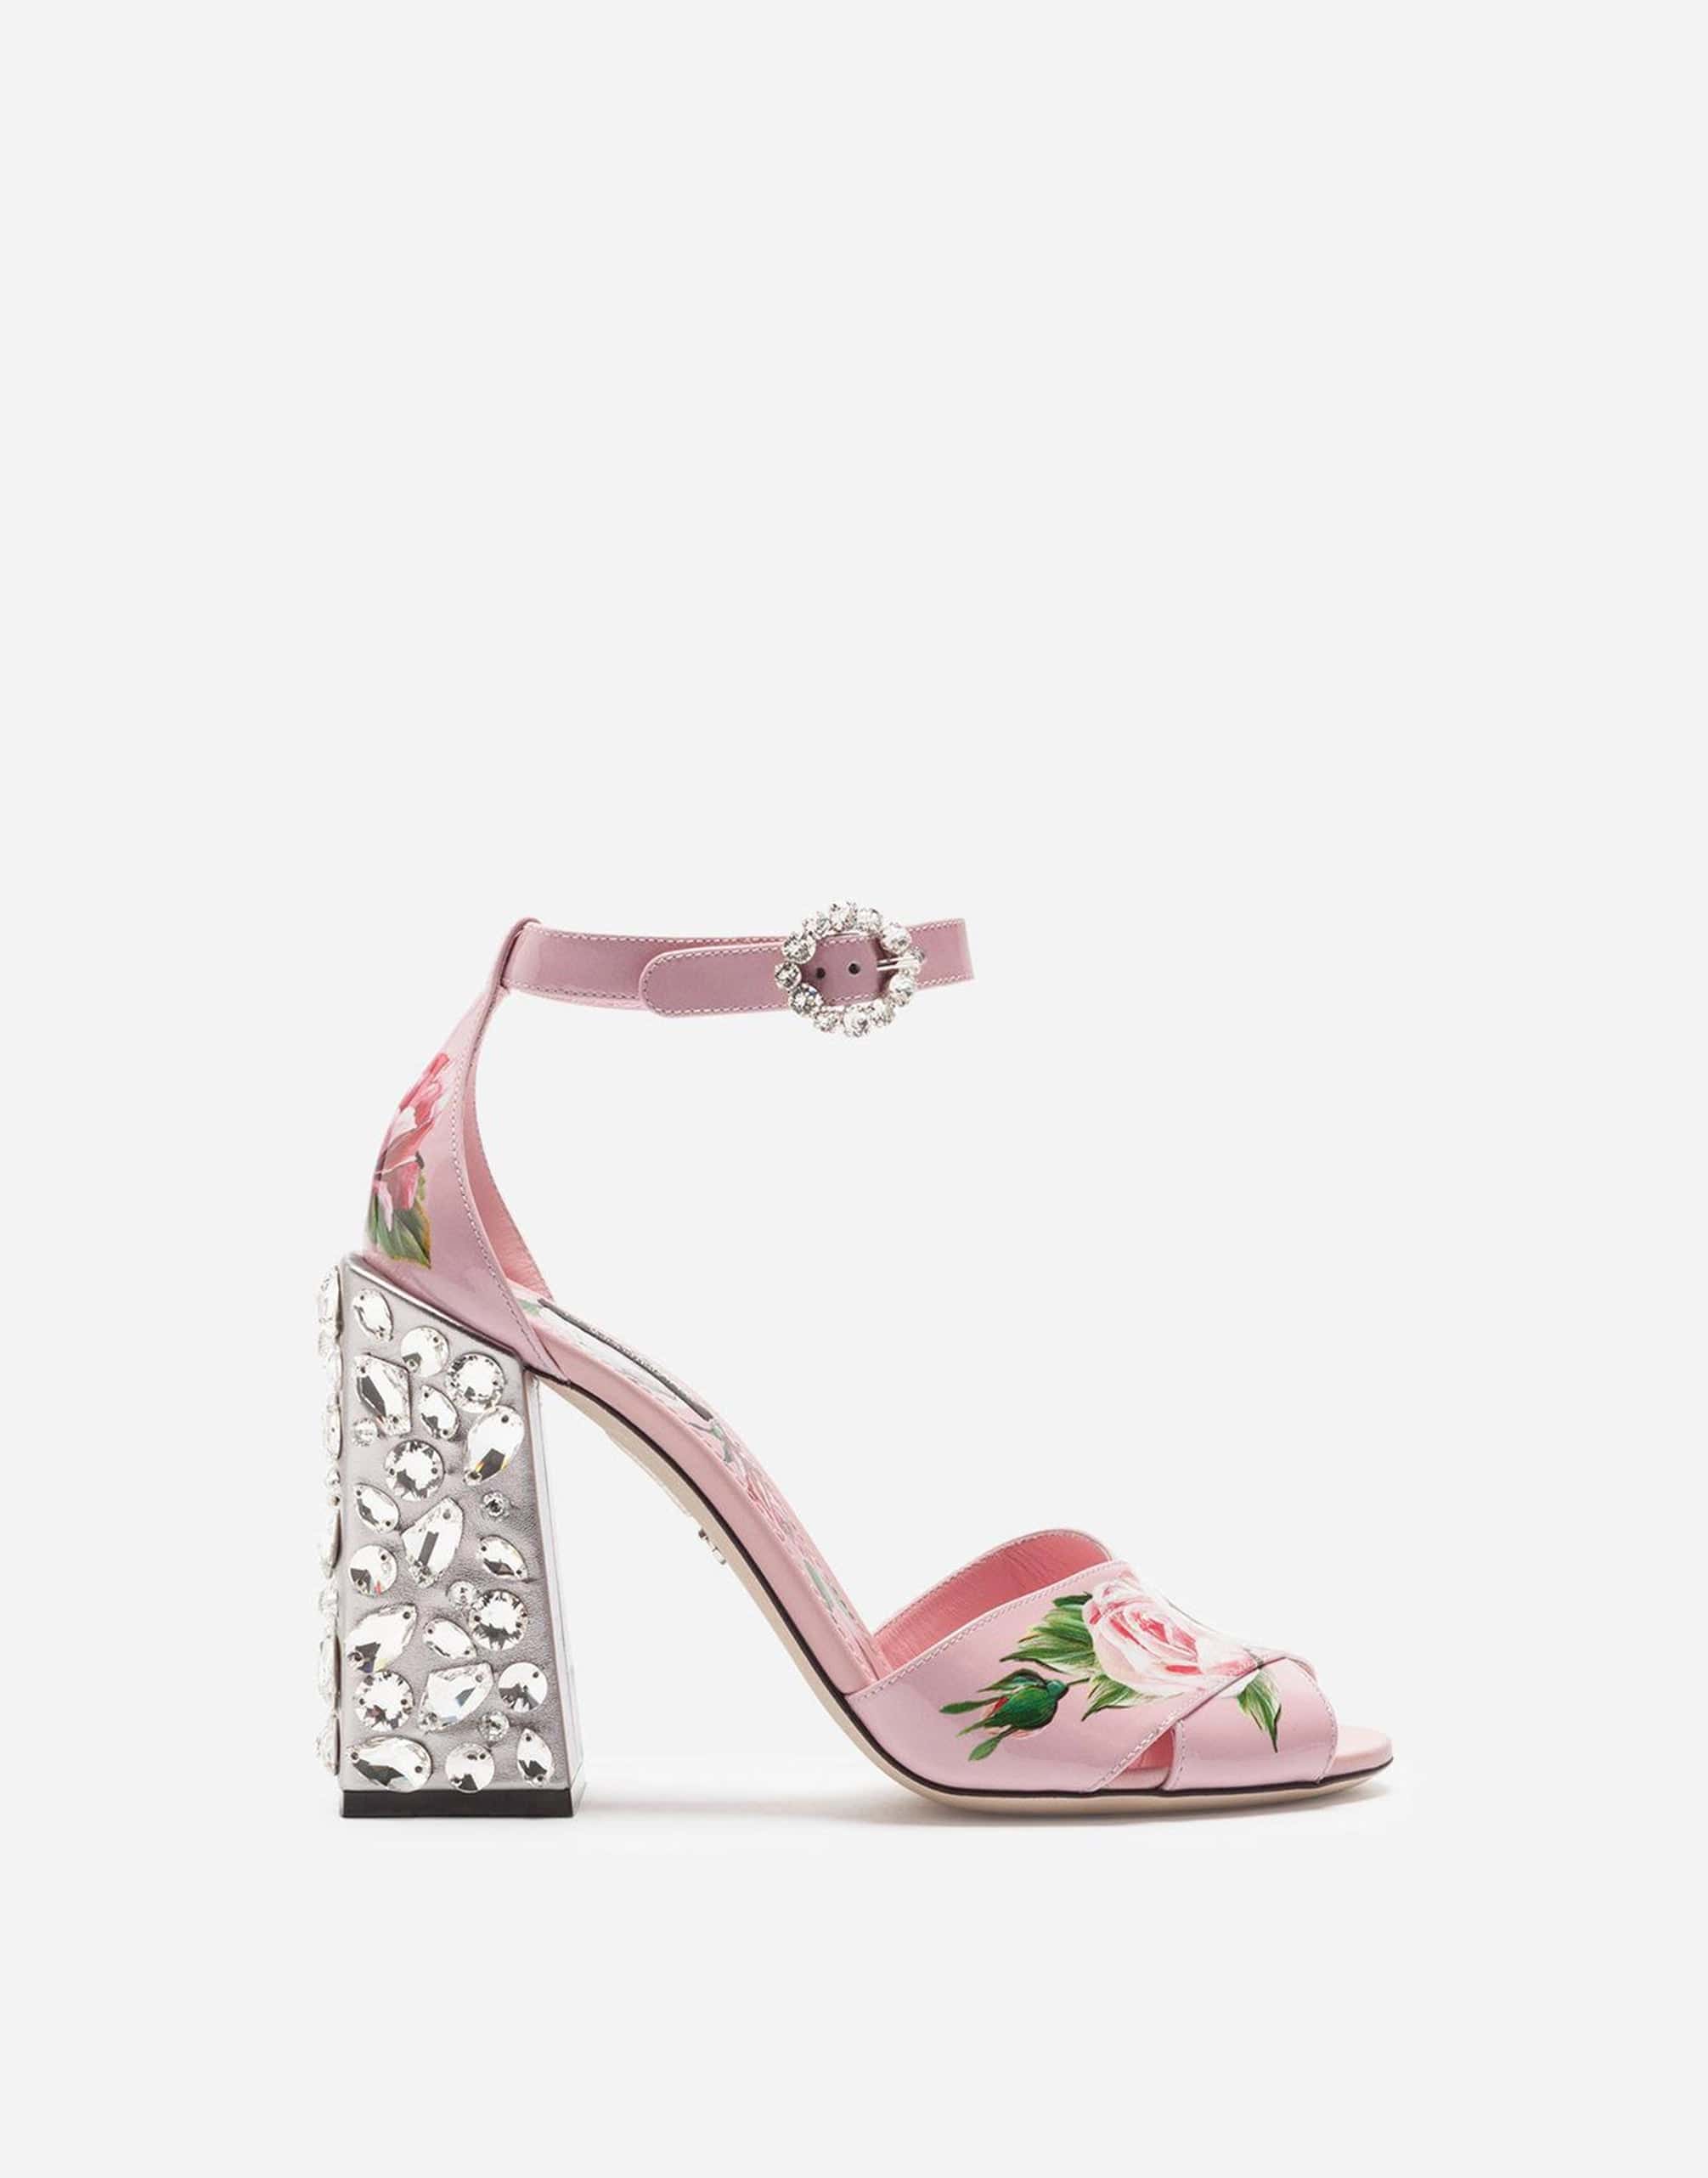 Dolce & Gabbana Crystal-Embellished Keira Floral-Print Sandals